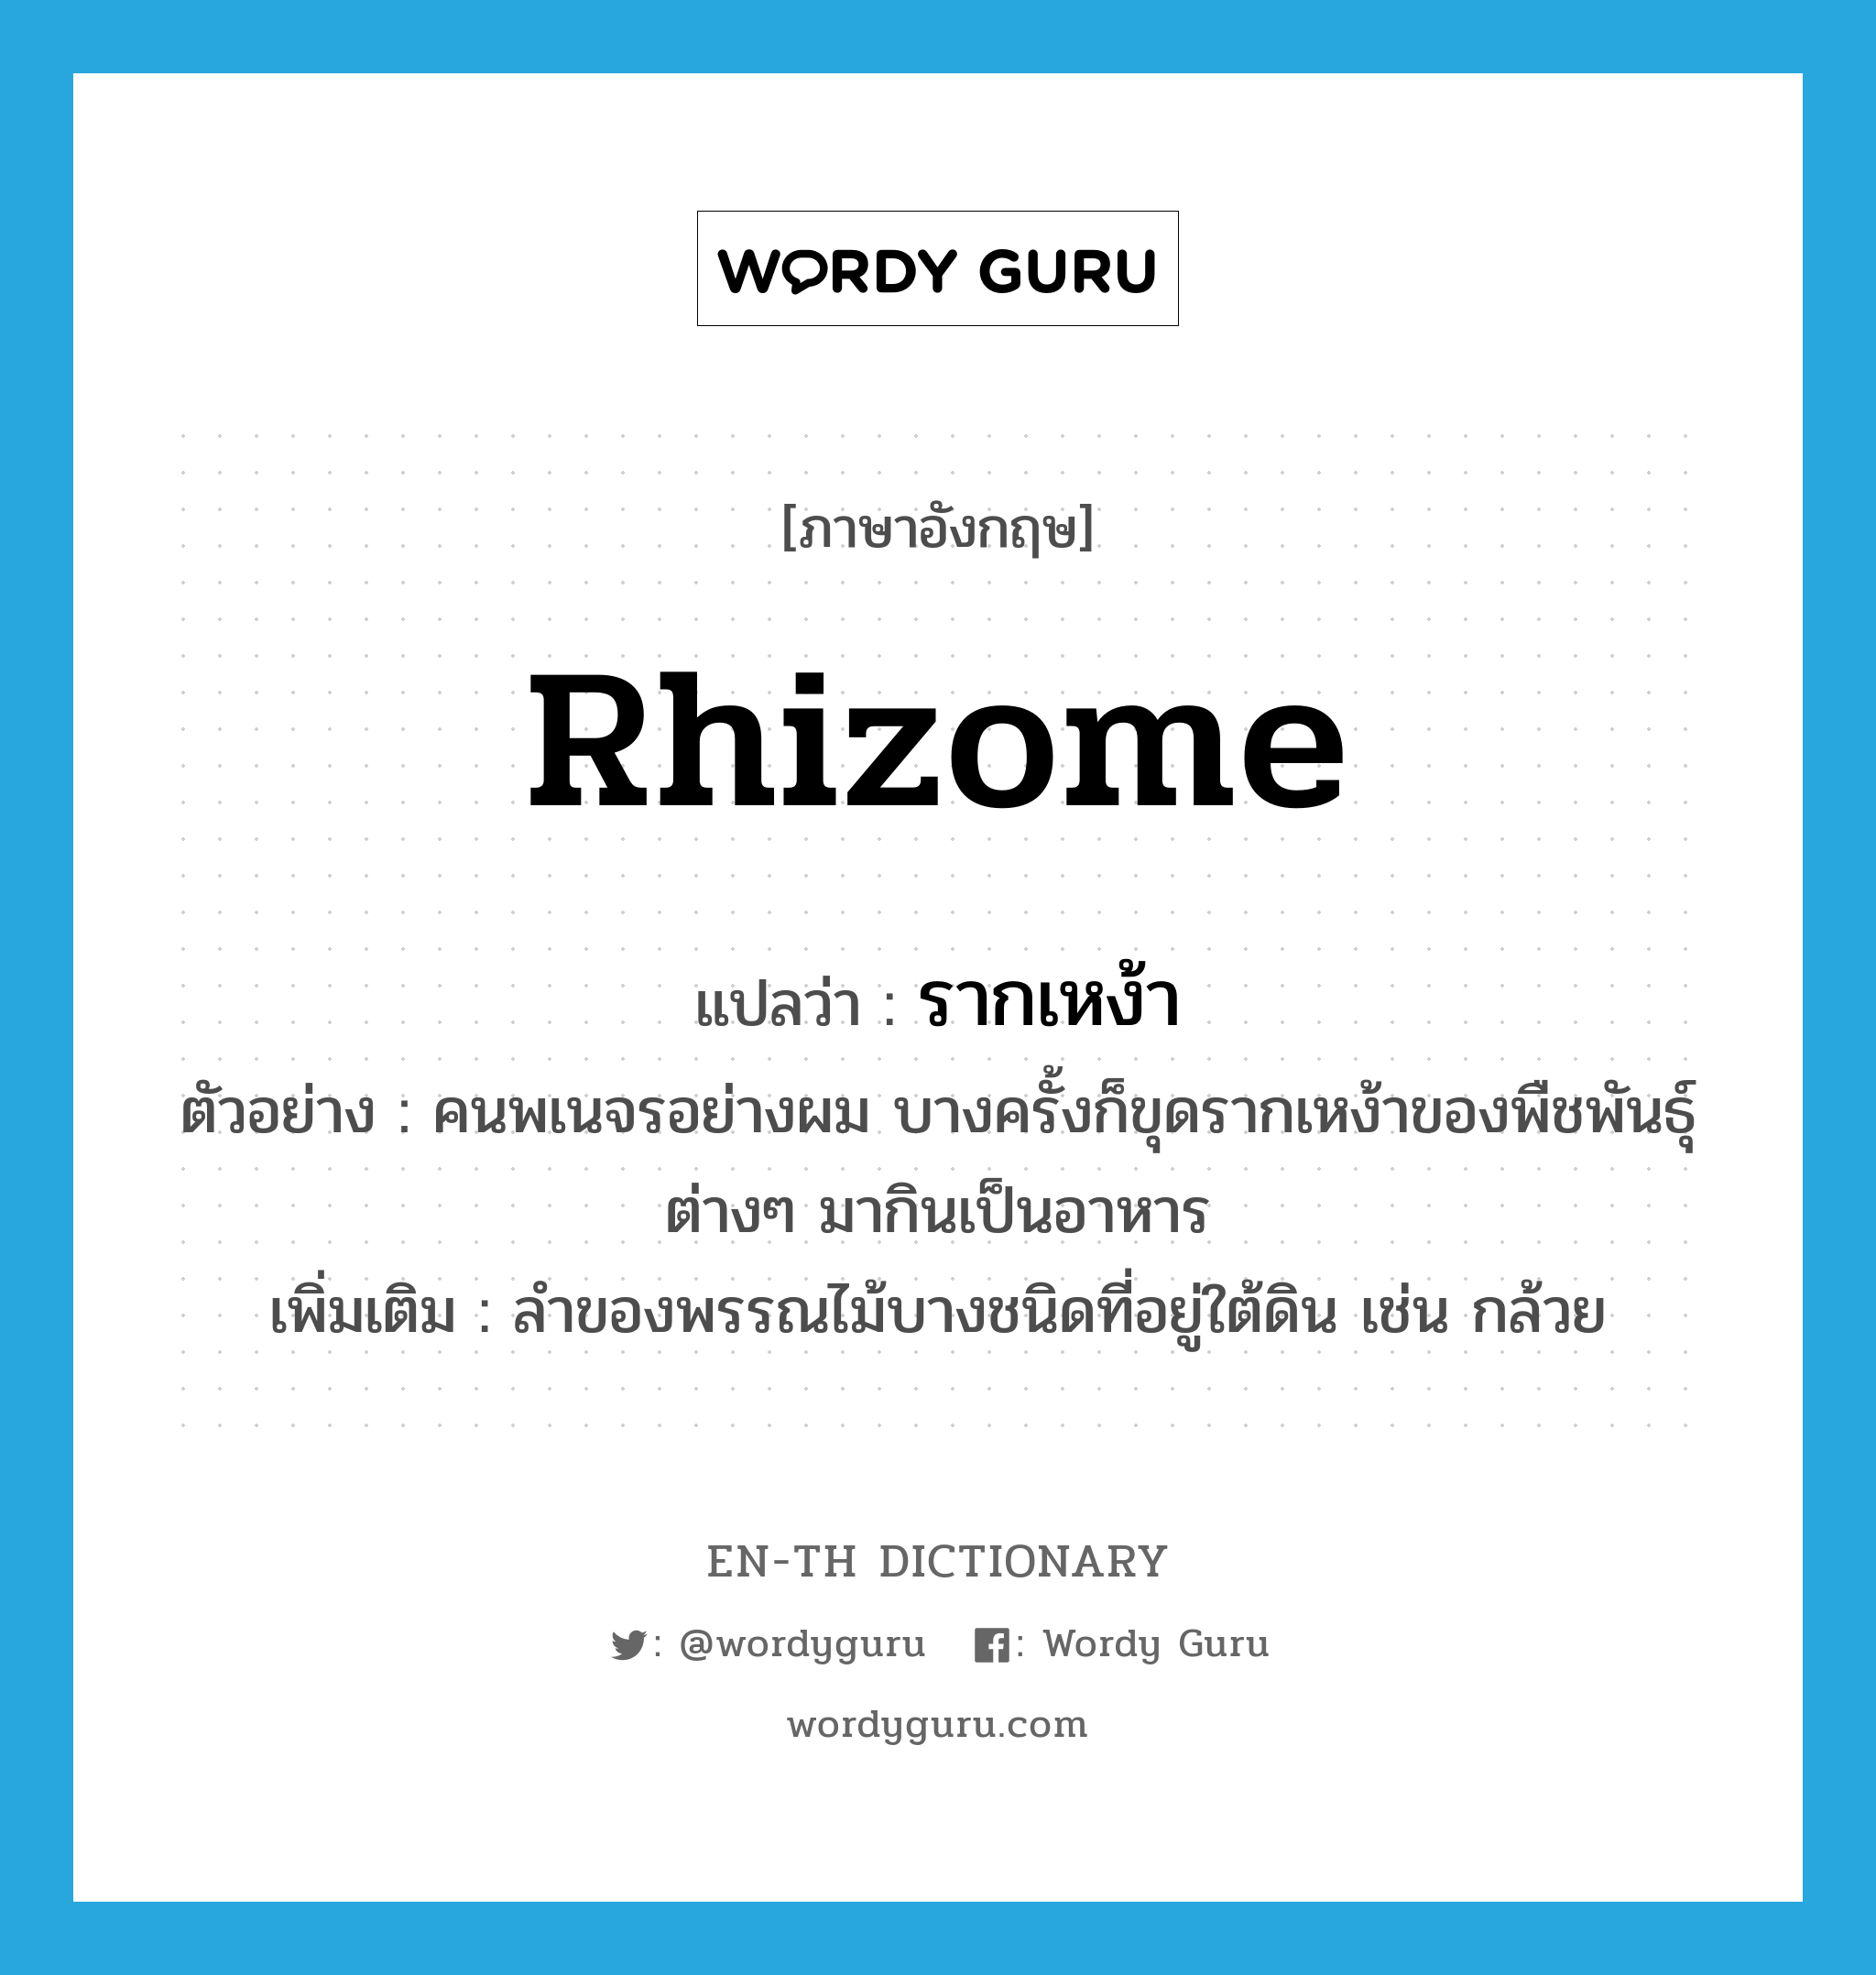 rhizome แปลว่า?, คำศัพท์ภาษาอังกฤษ rhizome แปลว่า รากเหง้า ประเภท N ตัวอย่าง คนพเนจรอย่างผม บางครั้งก็ขุดรากเหง้าของพืชพันธุ์ต่างๆ มากินเป็นอาหาร เพิ่มเติม ลำของพรรณไม้บางชนิดที่อยู่ใต้ดิน เช่น กล้วย หมวด N